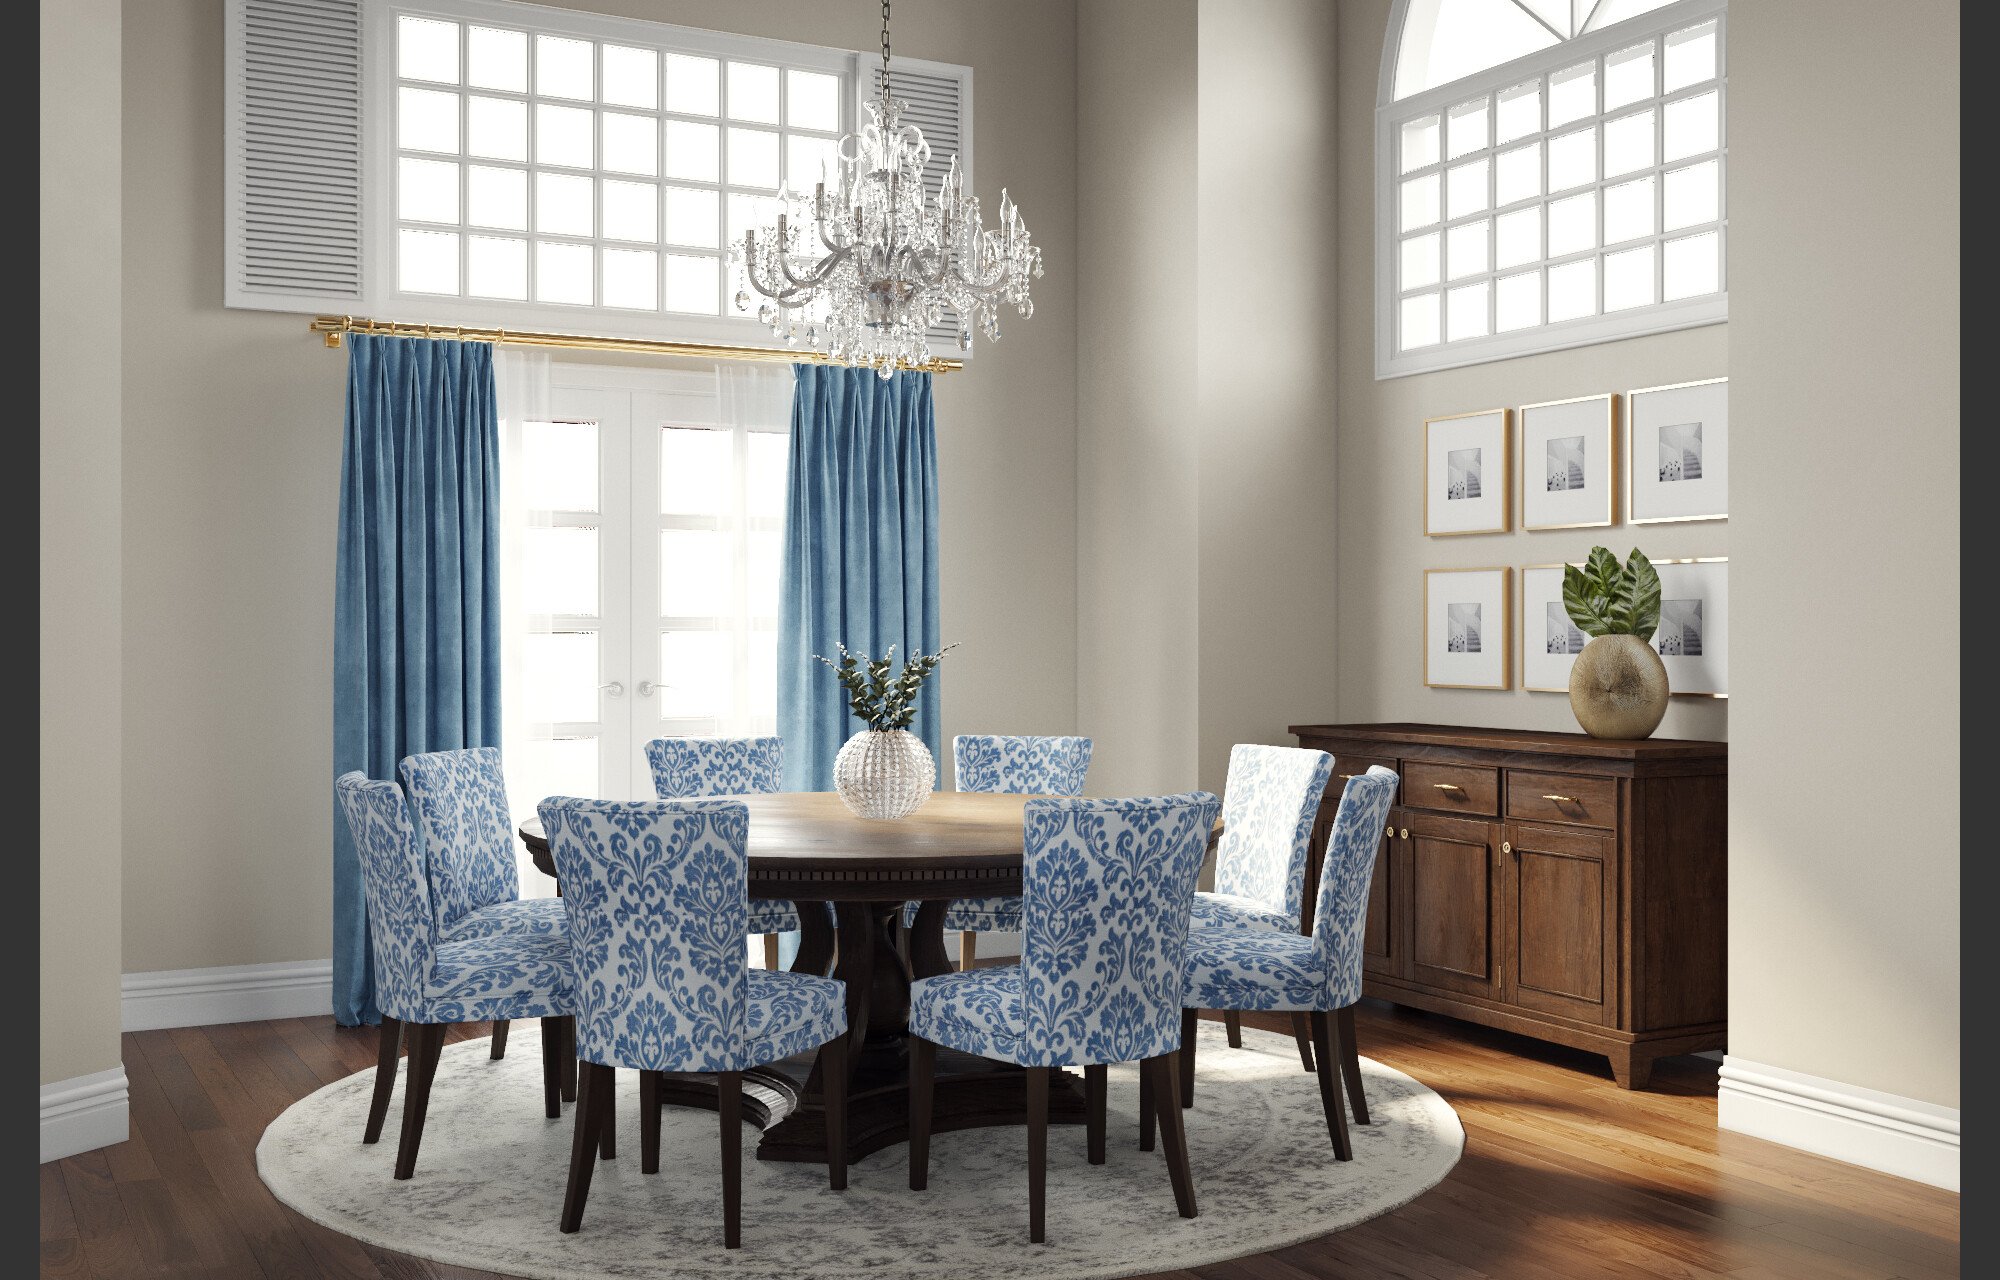 Online Living Dining Room Design interior design help 3